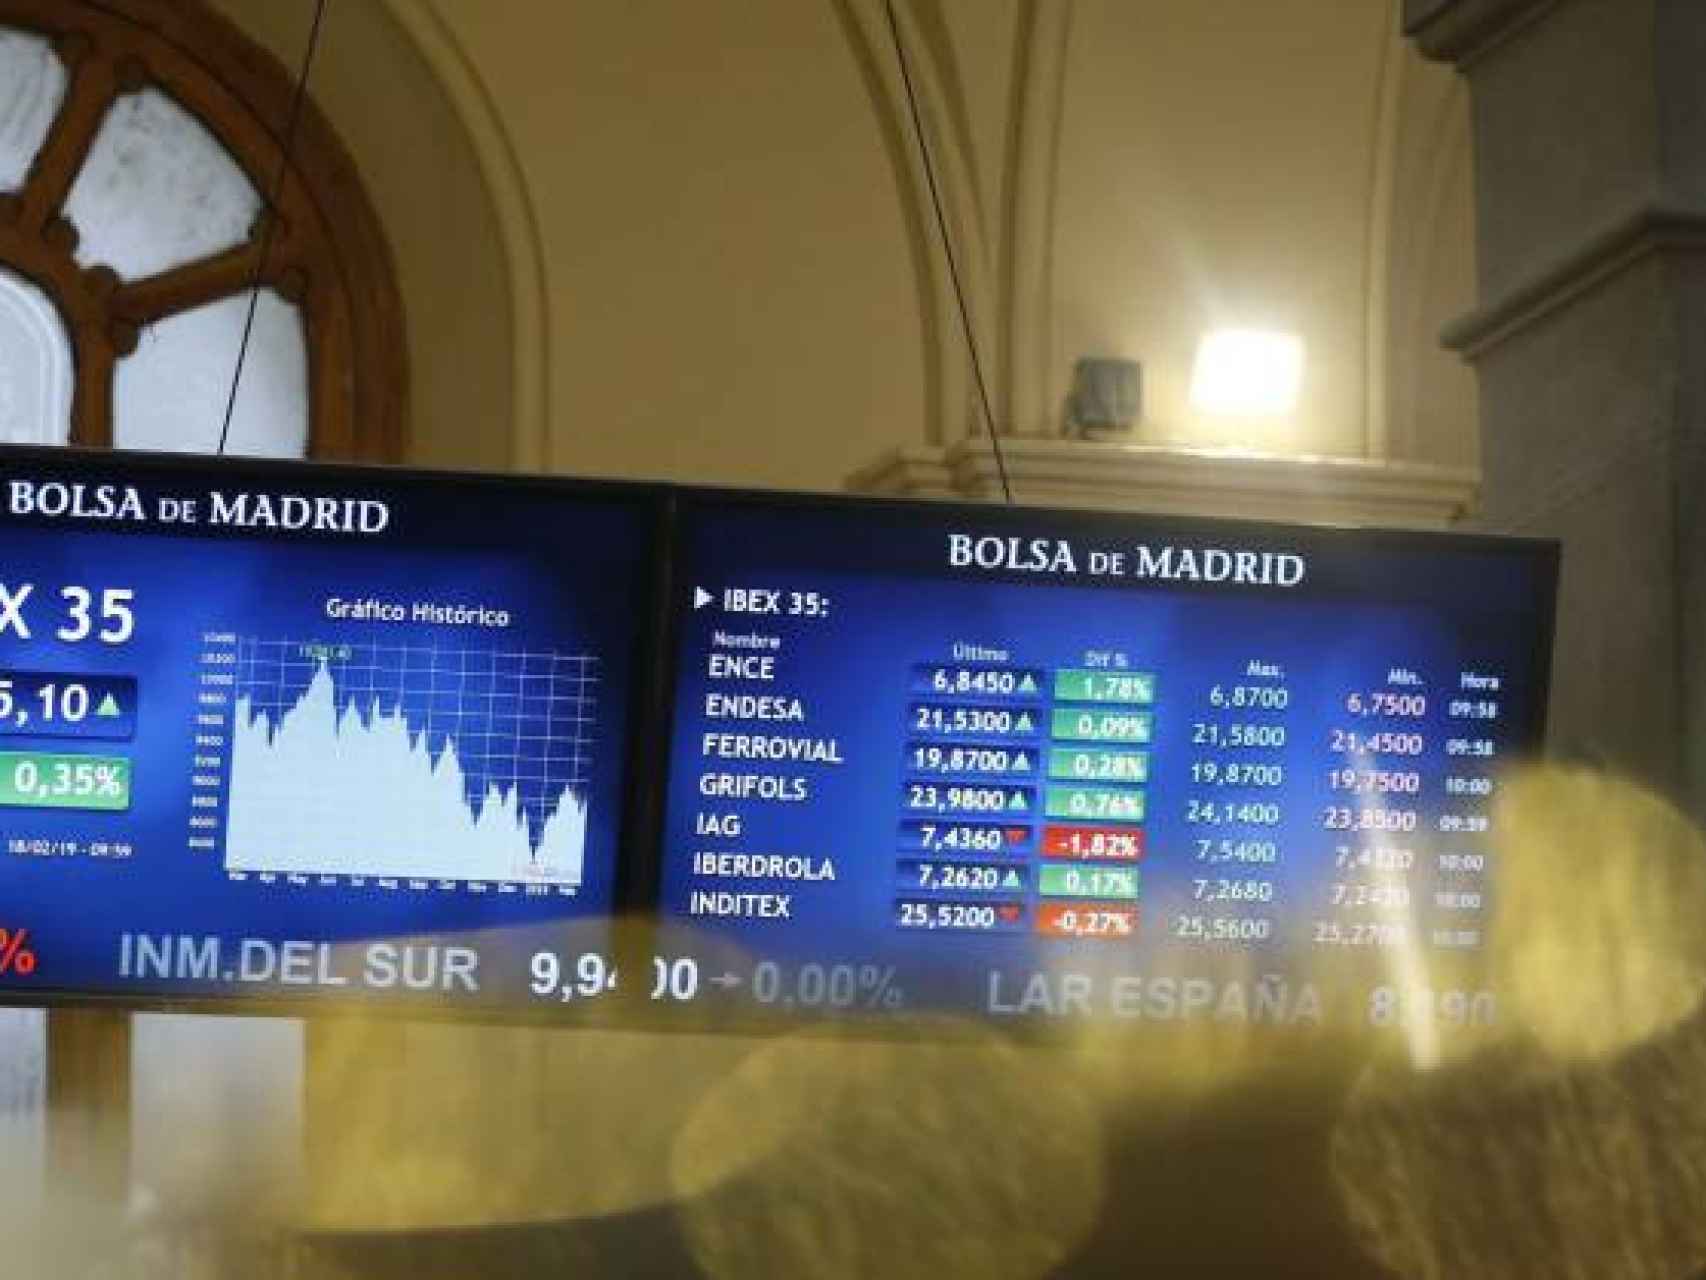 Pantallas de la Bolsa de Madrid con el Ibex 35 en ellas.